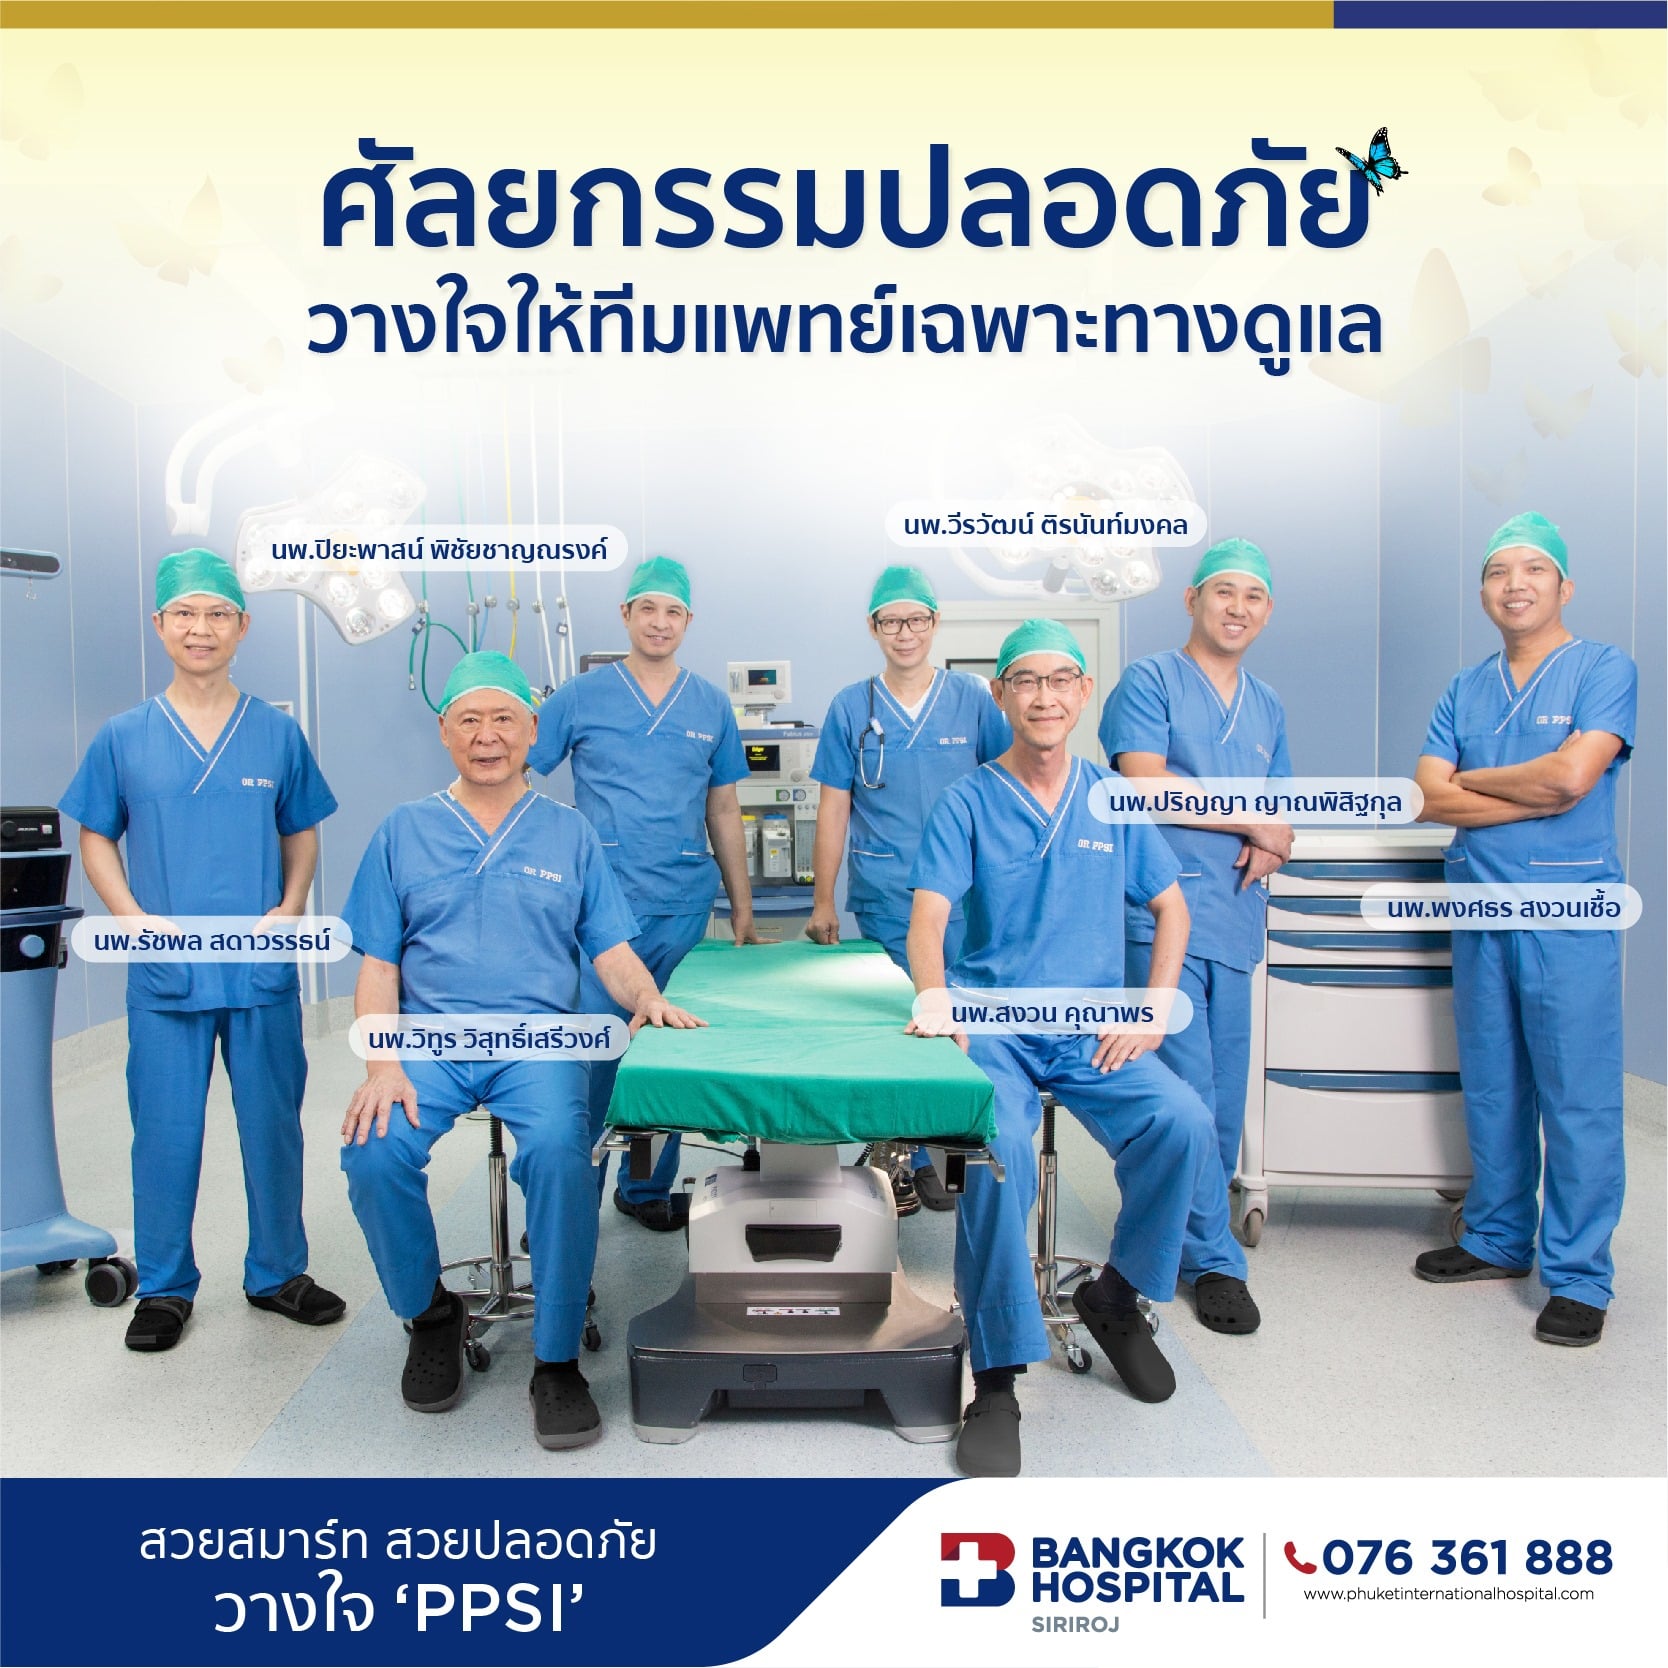 PPSI รพ.กรุงเทพสิริโรจน์ บุกตลาด (ไทย) ผลักดันวงการศัลยกรรม “สวยปลอดภัย สวยได้ในไทยไม่ต้องบินไกลถึงเกาหลี”